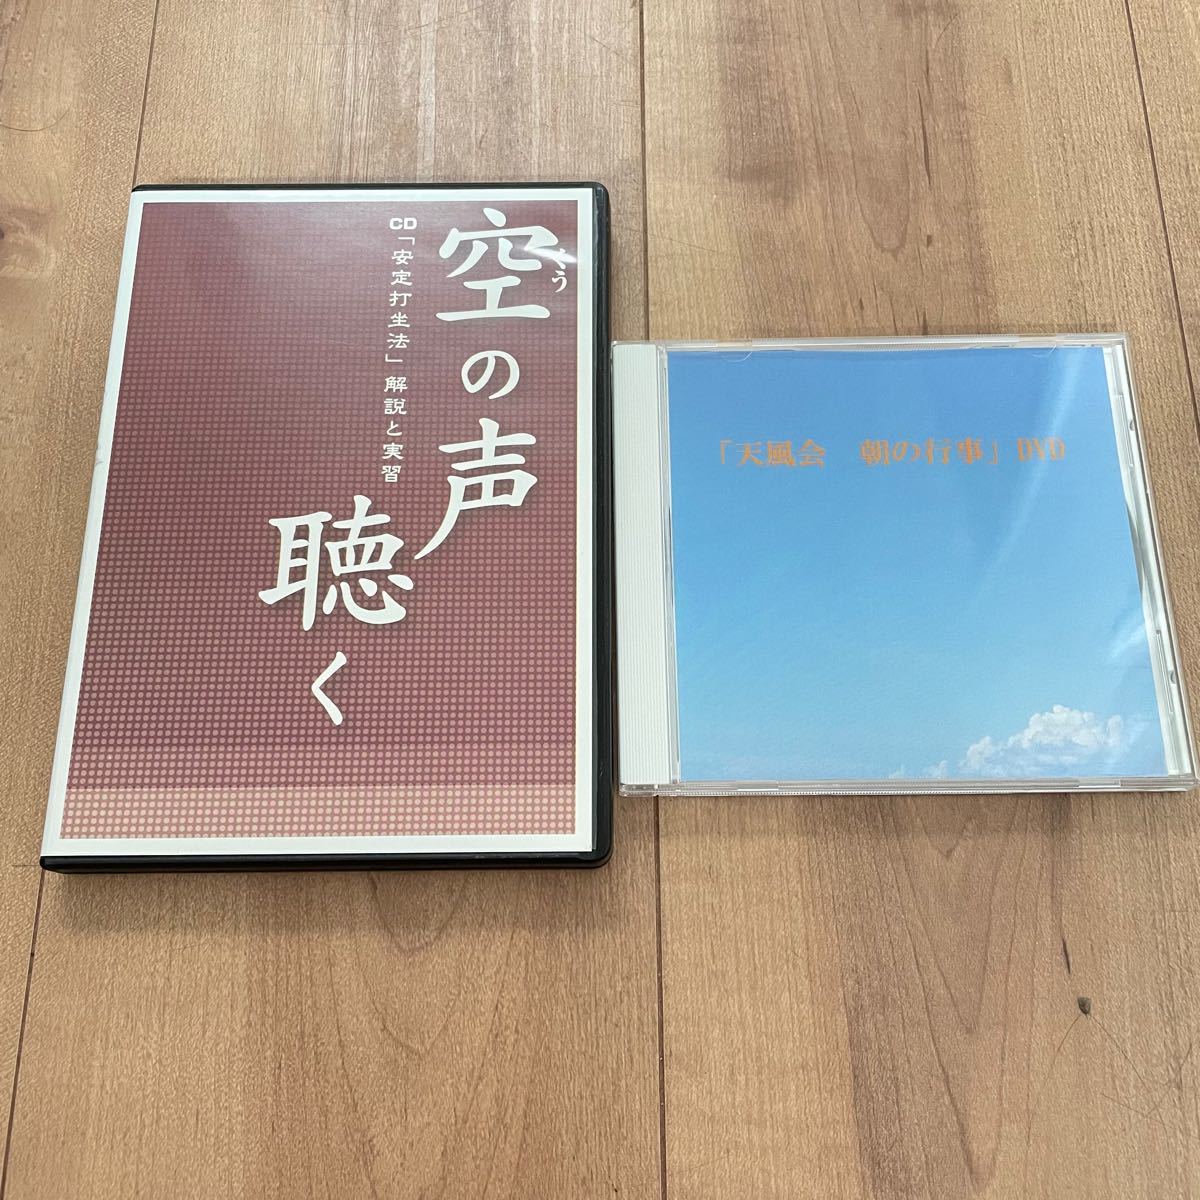 中村天風 CD 『空の声を聴く』 DVD『天風会 朝の行事』 セット